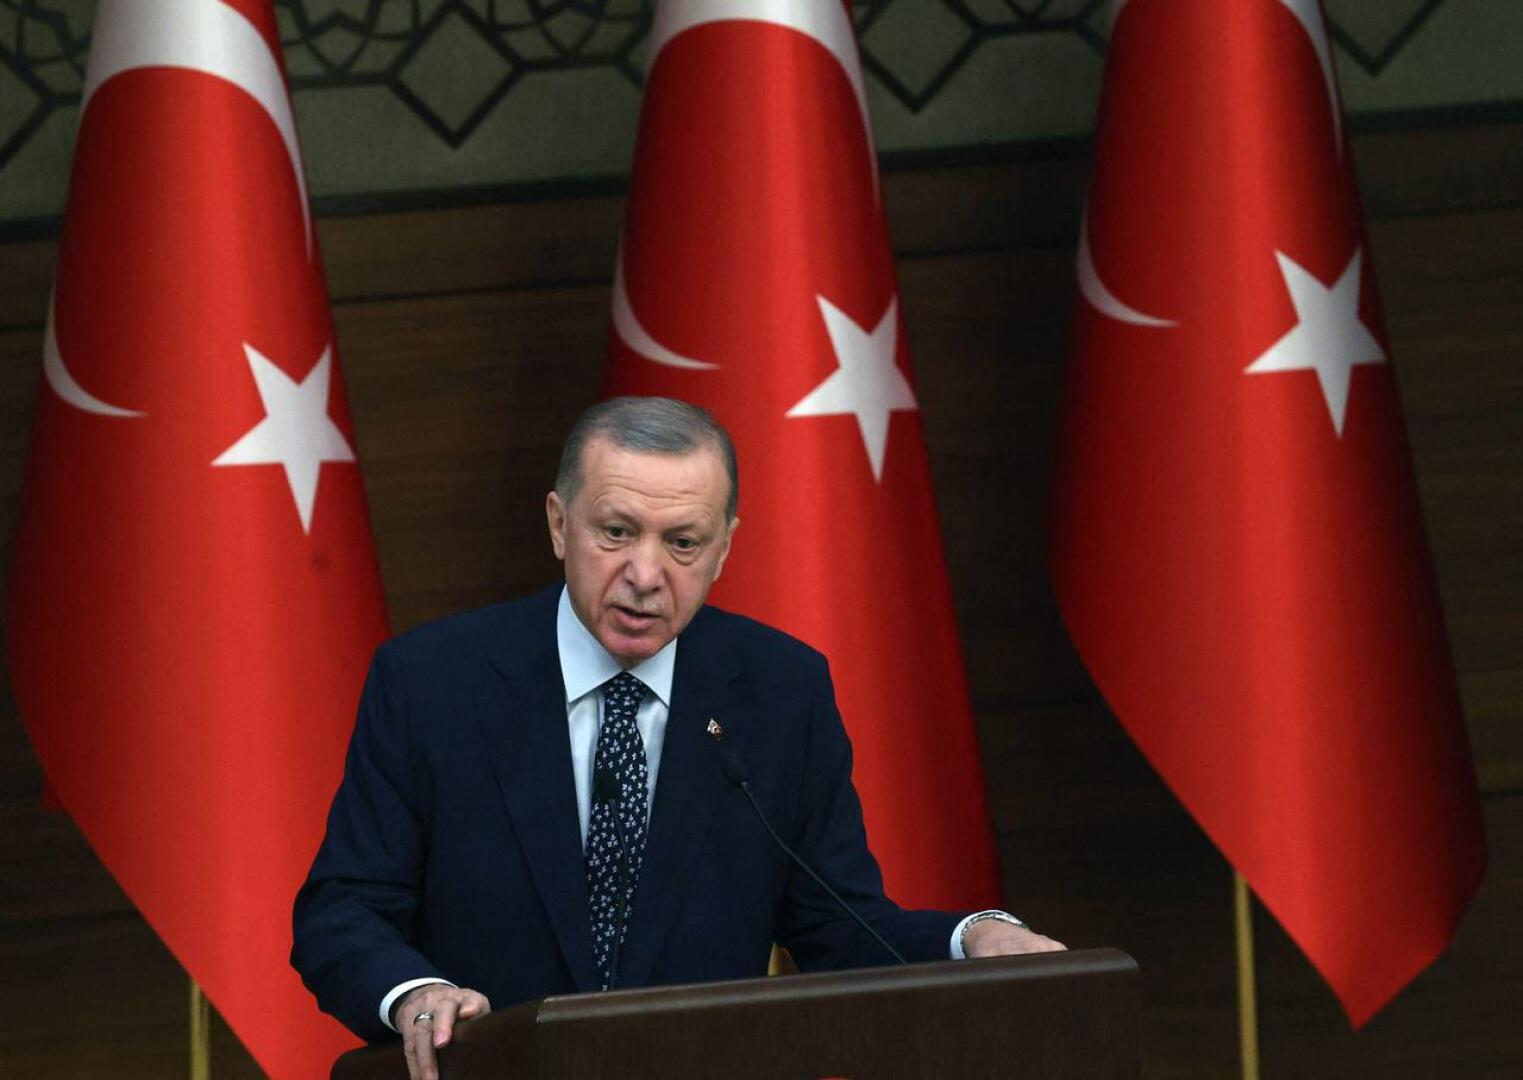 Turkin presidentti Recep Tayyip Erdogan kertoi sunnuntaina keskustelutilaisuudessa, että Turkki on mahdollisesti valmis hyväksymään Suomen Natoon.